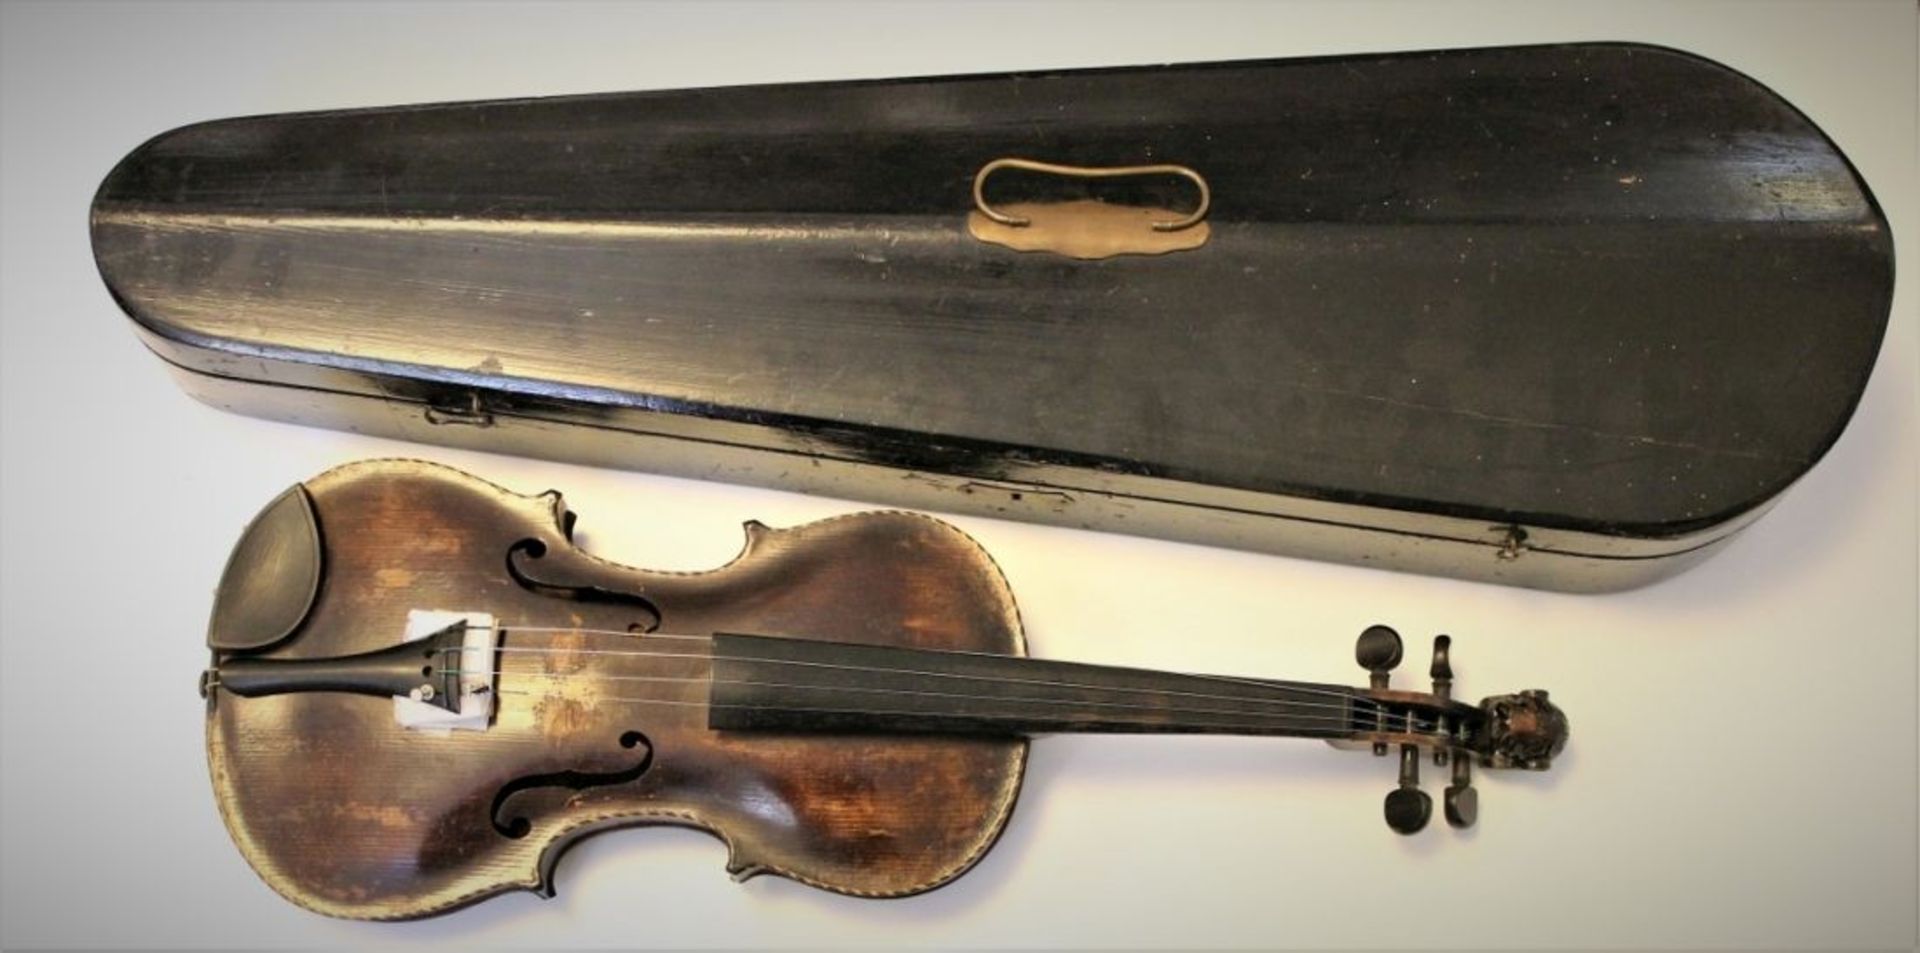 Antike Geige Klebeetikett bez.: Petrus Schulz Chittar- und Geigenmacher in Regensburg anno 1845,